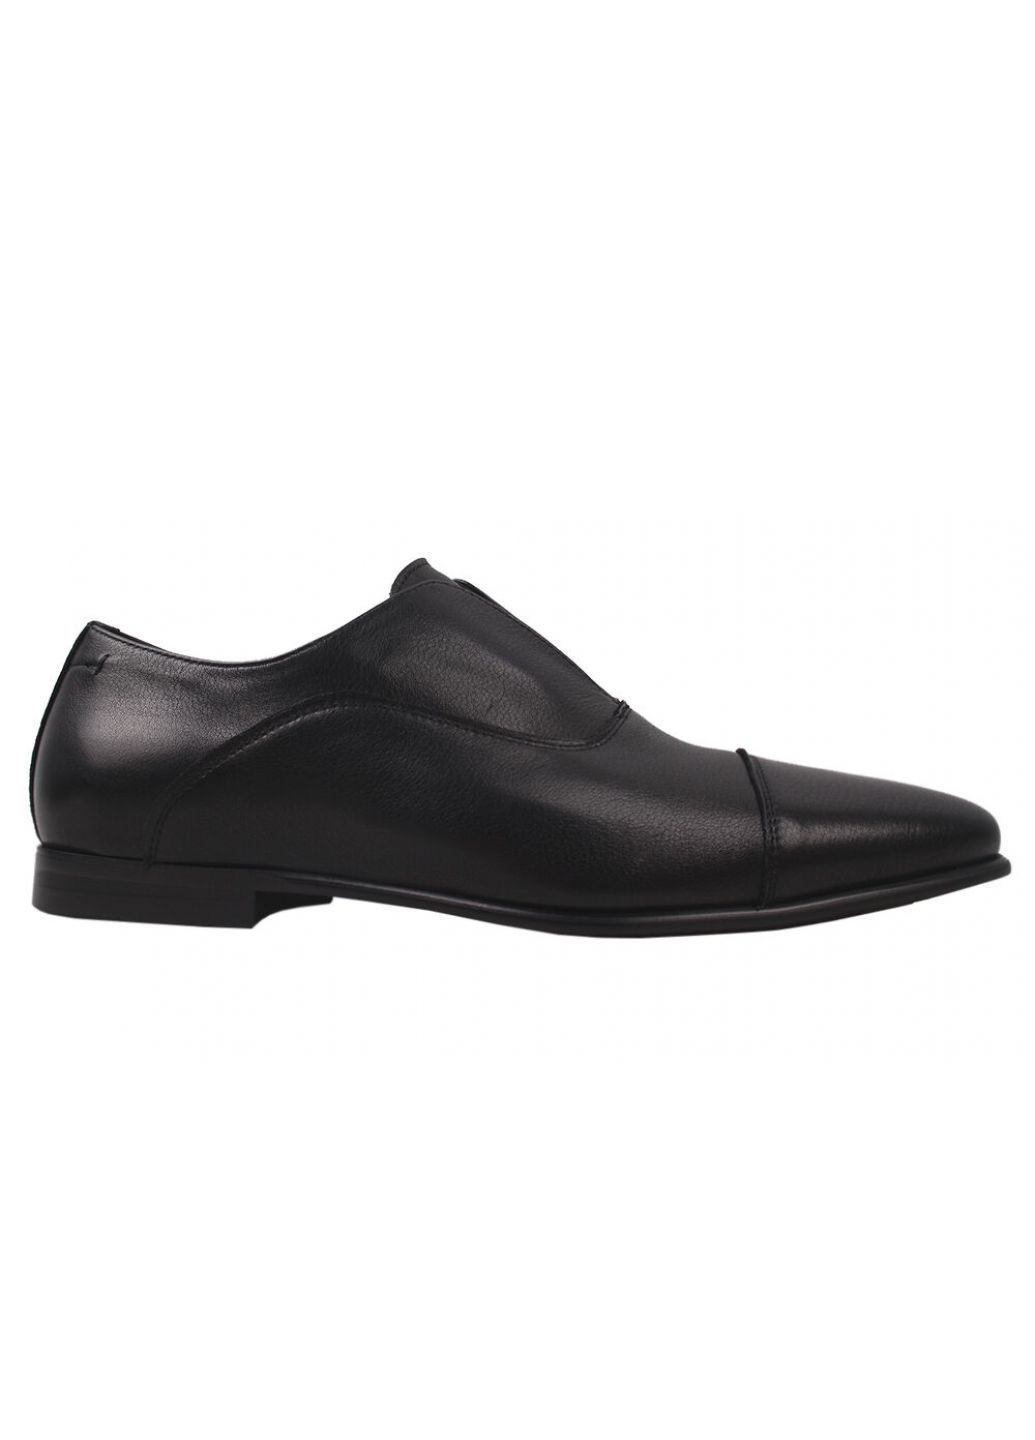 Туфлі класика чоловічі натуральна шкіра, колір чорний Antoni Bianchi 9-20dt (257420180)